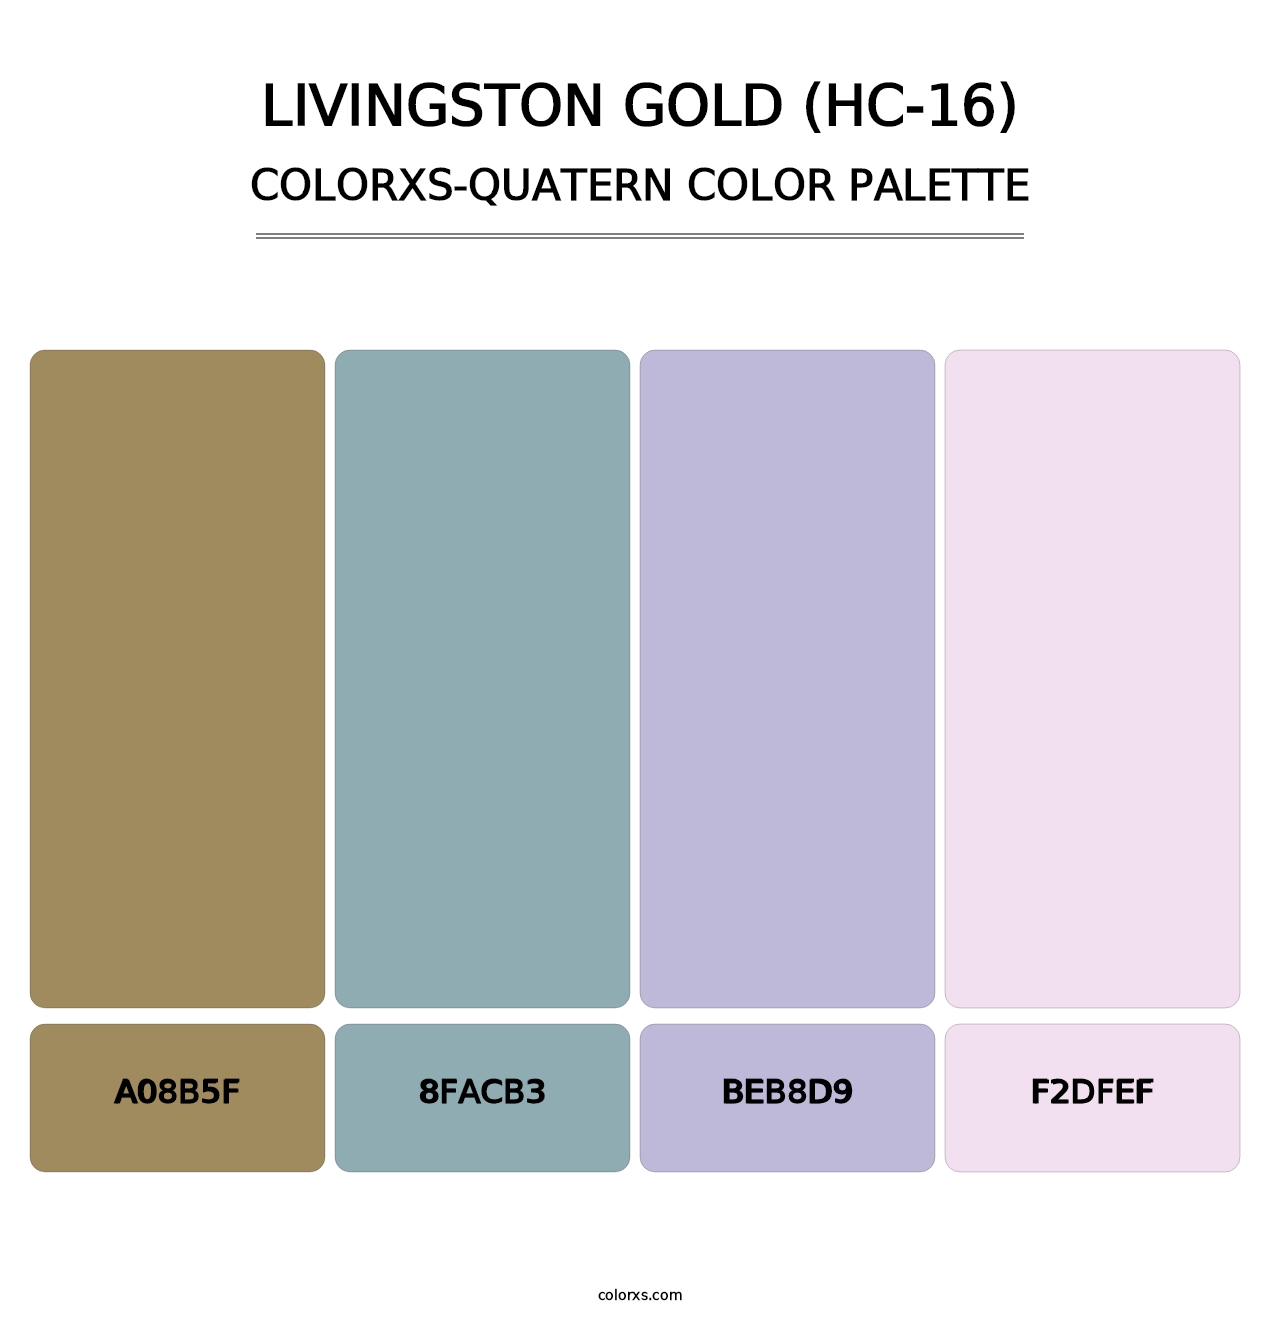 Livingston Gold (HC-16) - Colorxs Quatern Palette